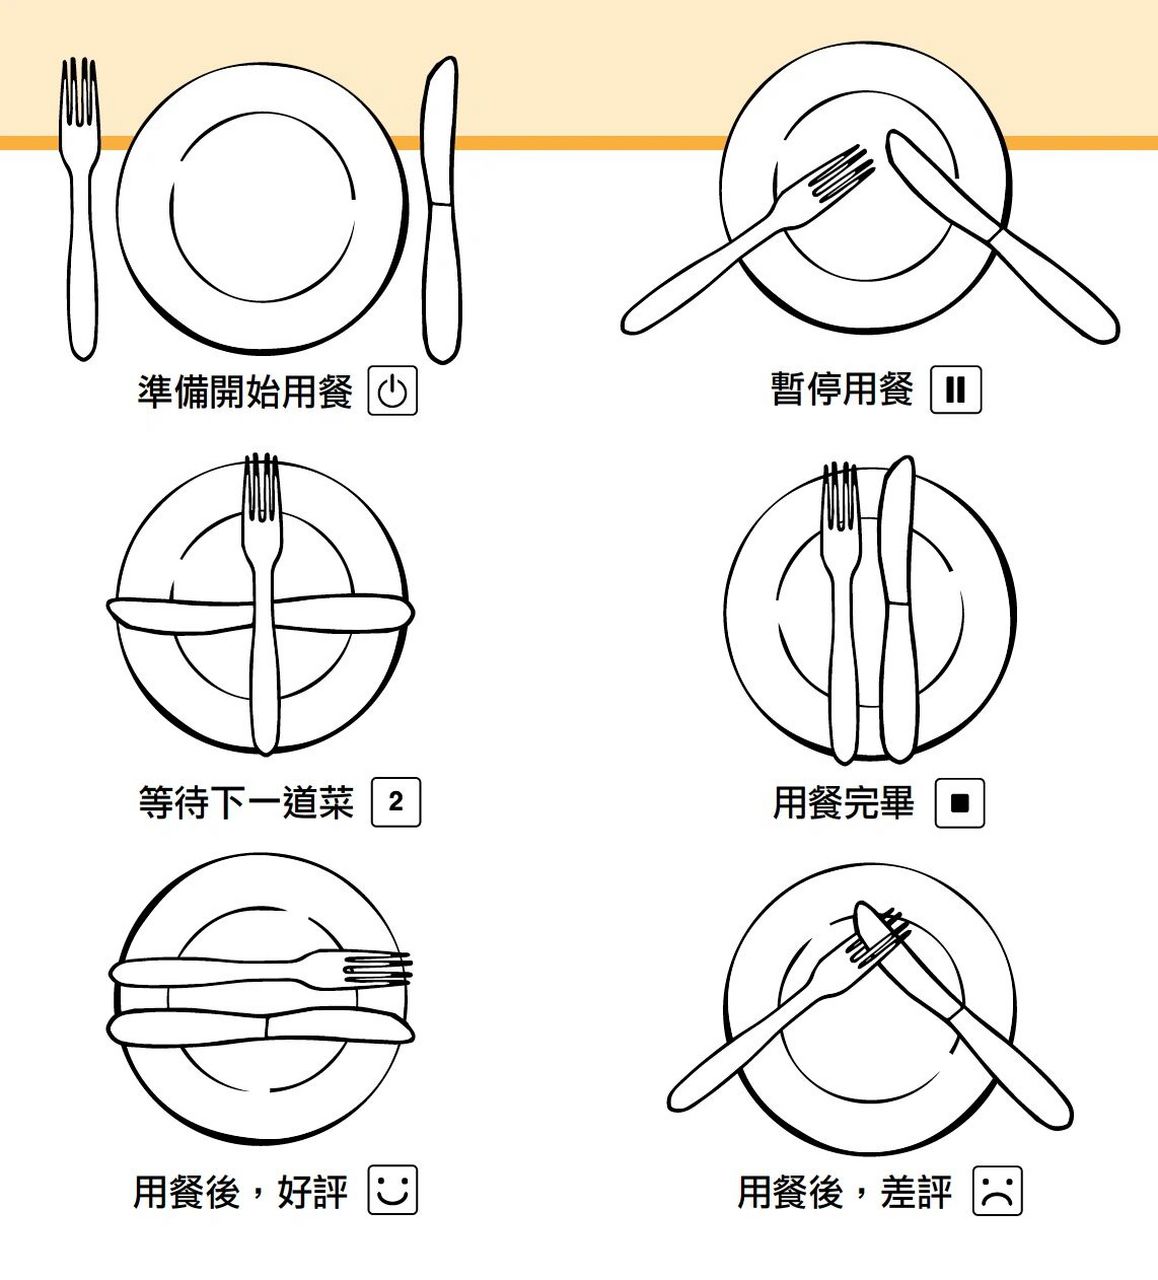 西餐中刀叉的摆放物语 在西餐礼仪中,刀叉的摆放也颇有讲究,不同的